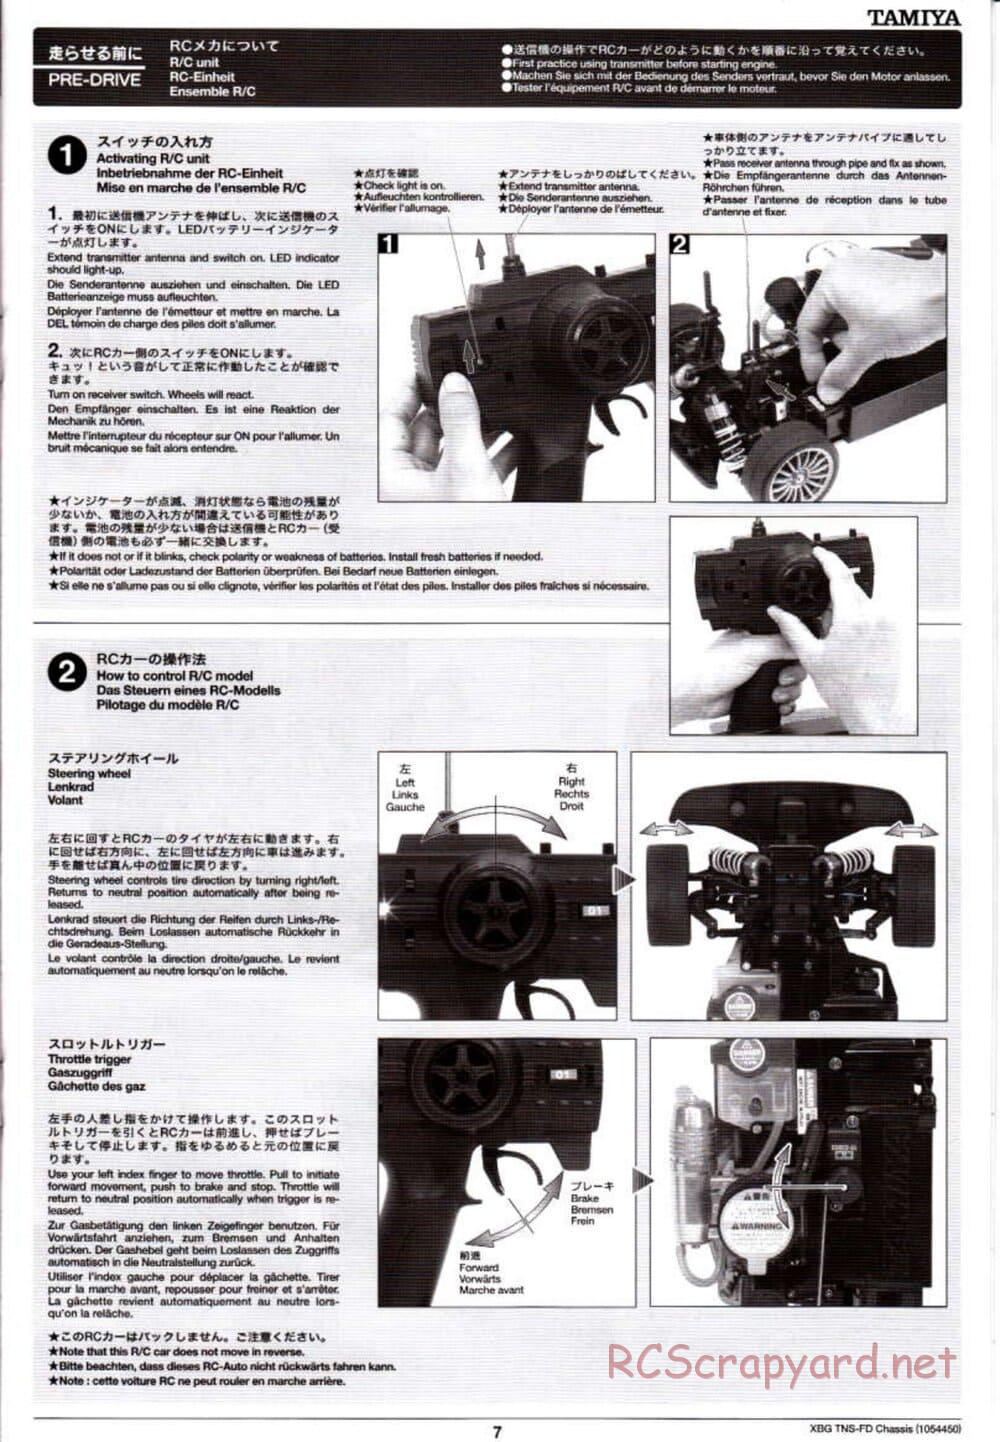 Tamiya - TNS-FD Chassis - Manual - Page 7